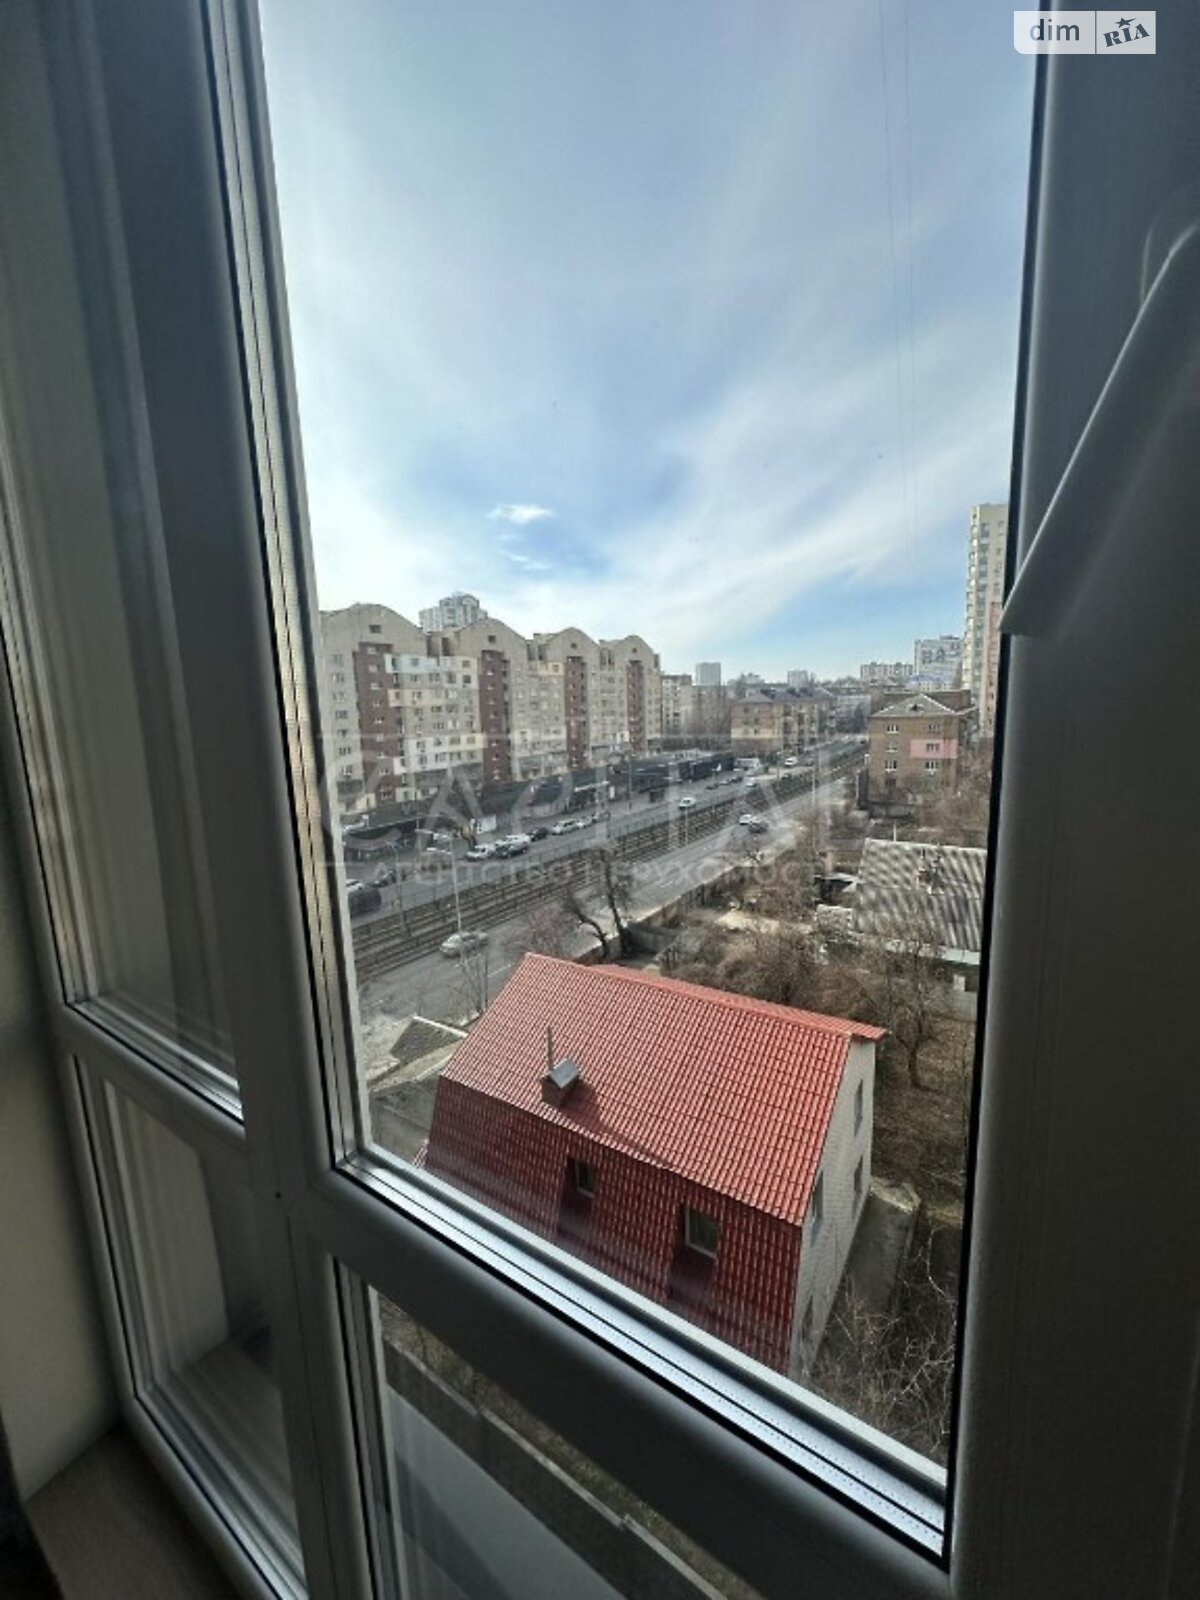 Аренда офисного помещения в Киеве, Борщаговская улица 192, помещений - 6, этаж - 6 фото 1